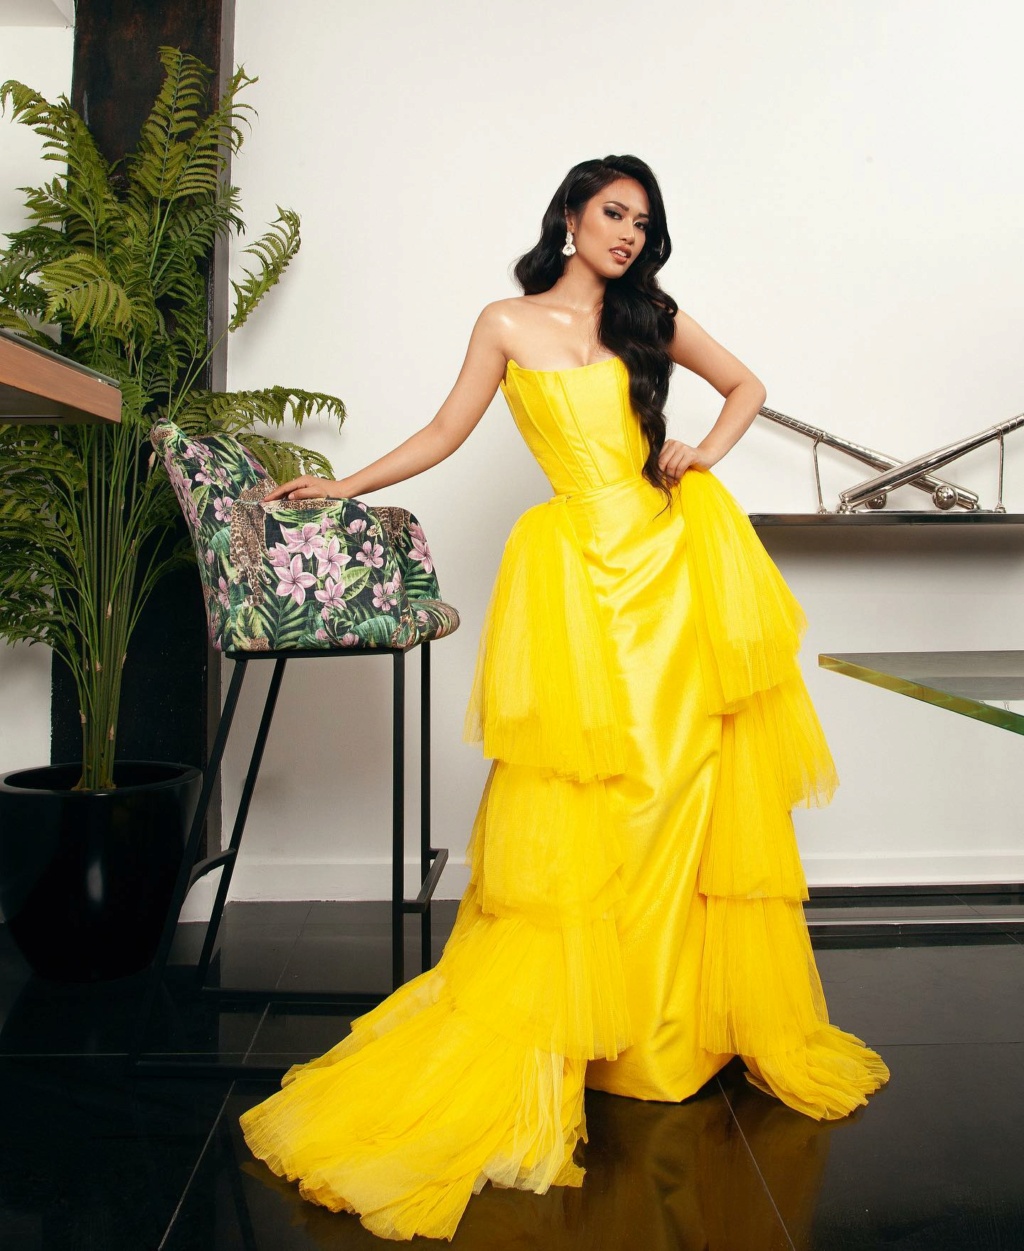 Miss World Philippines 2021 @ Evening Gown Portrait 22246010